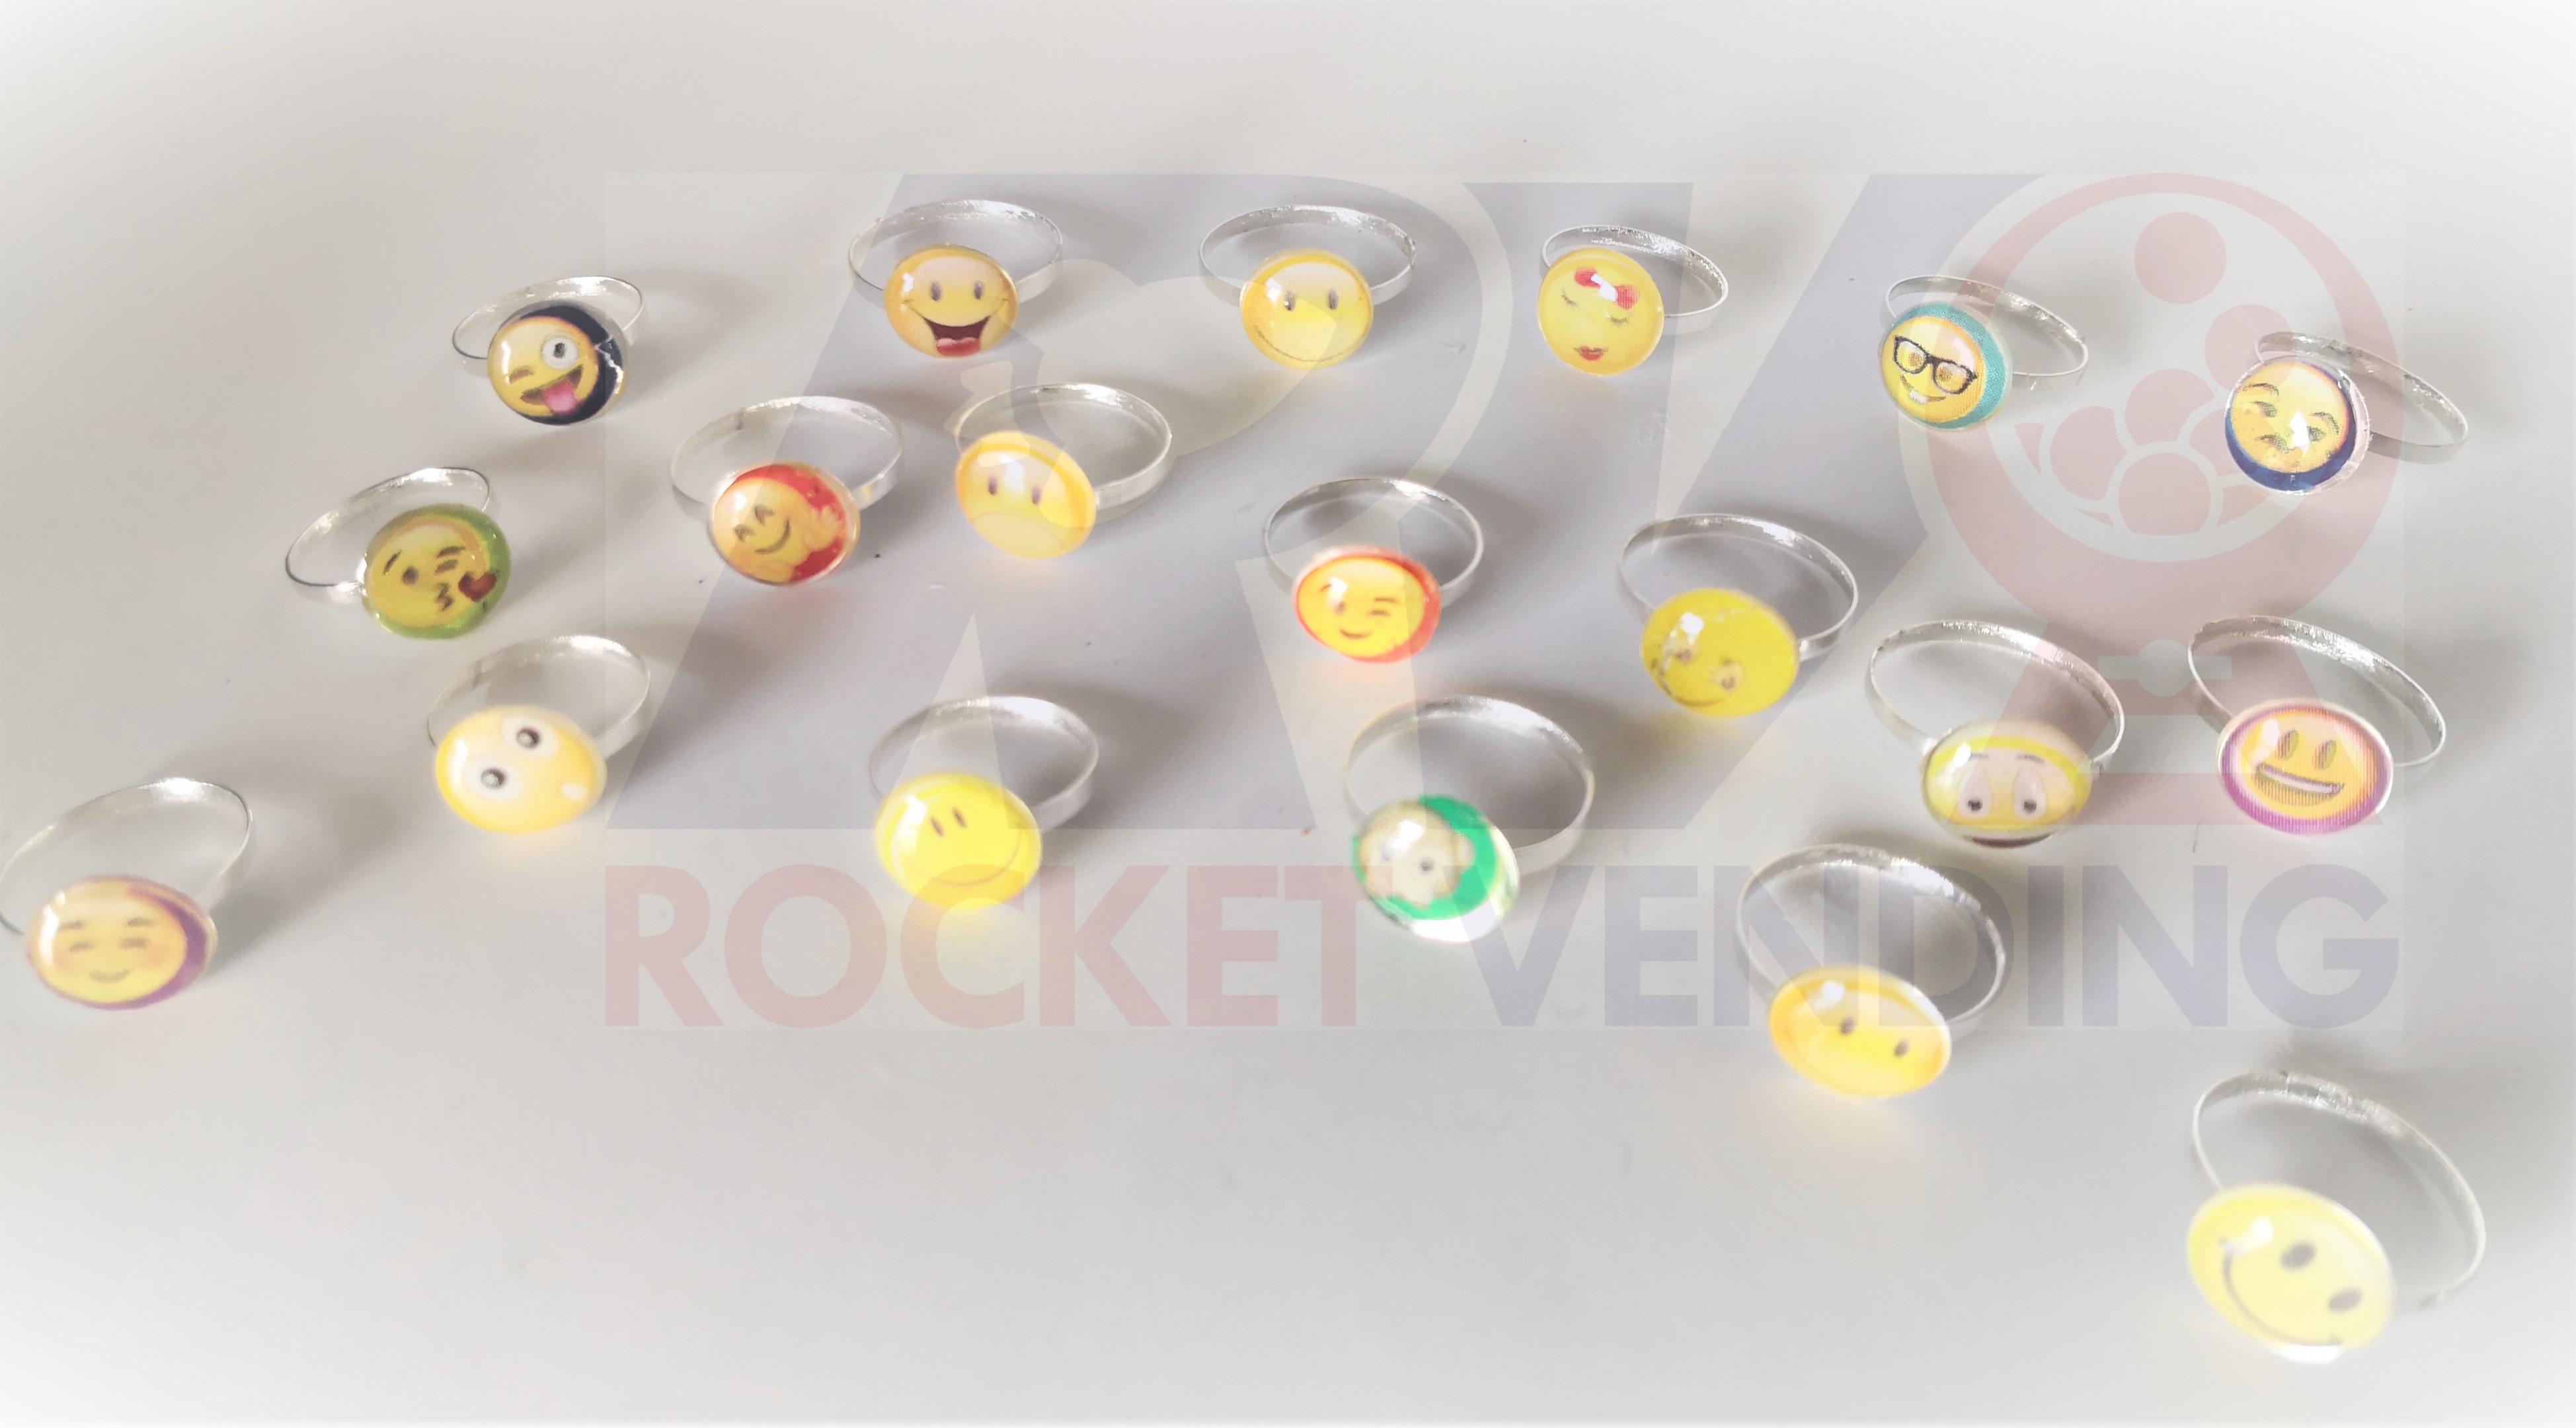 Anillos Emoji Niñas Metal Juguete encapsulado 1 pulgada 100 Pzas 1p - Rocket Vending Todo en Chicleras